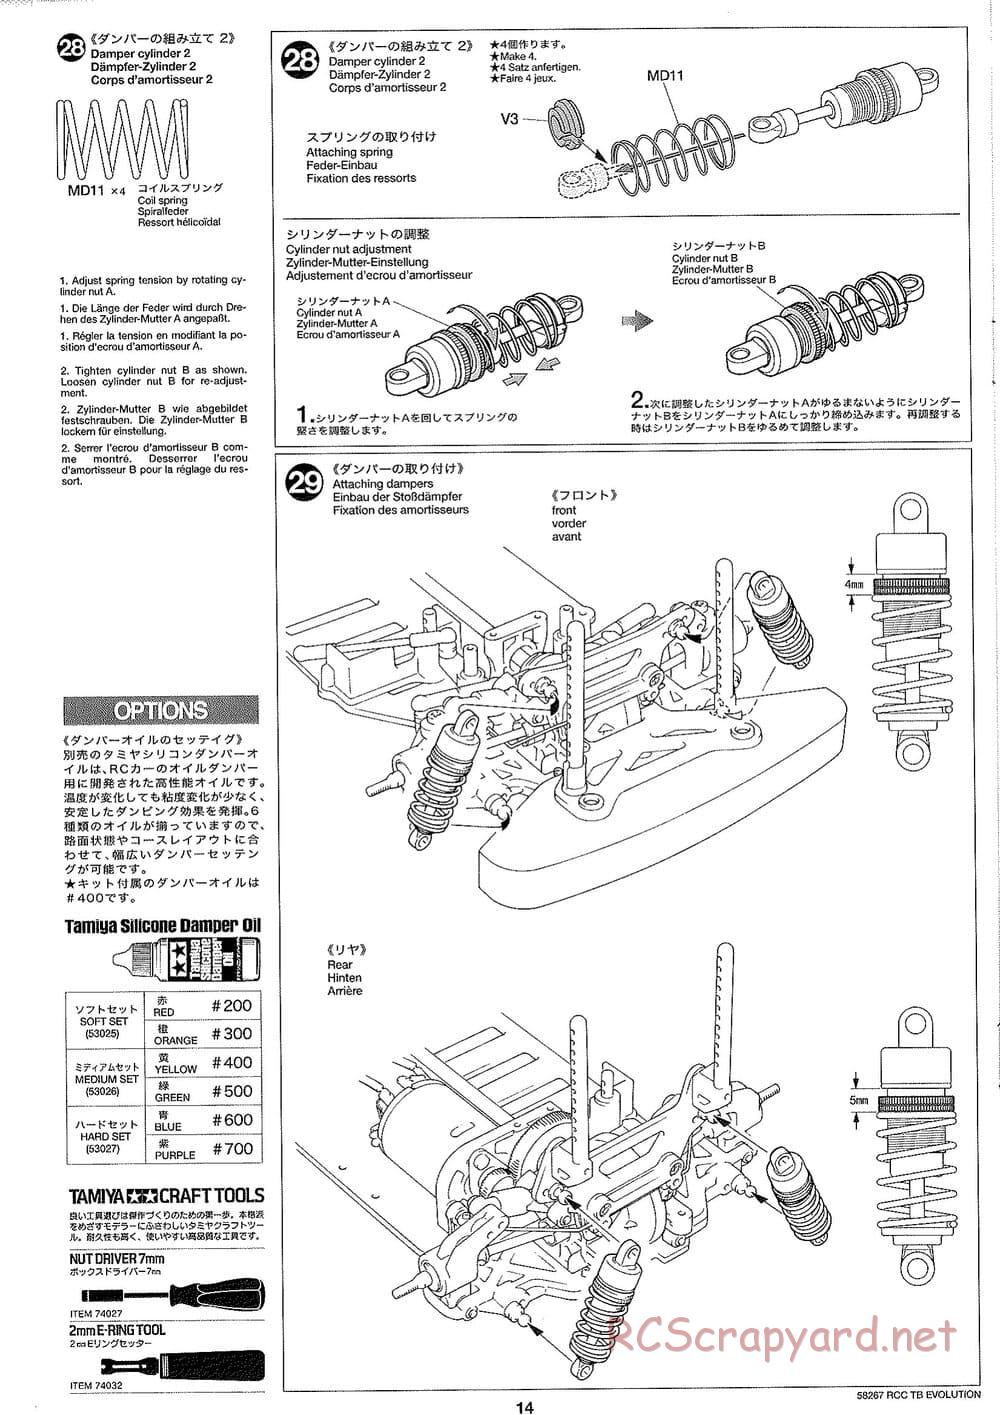 Tamiya - TB Evolution Chassis - Manual - Page 14